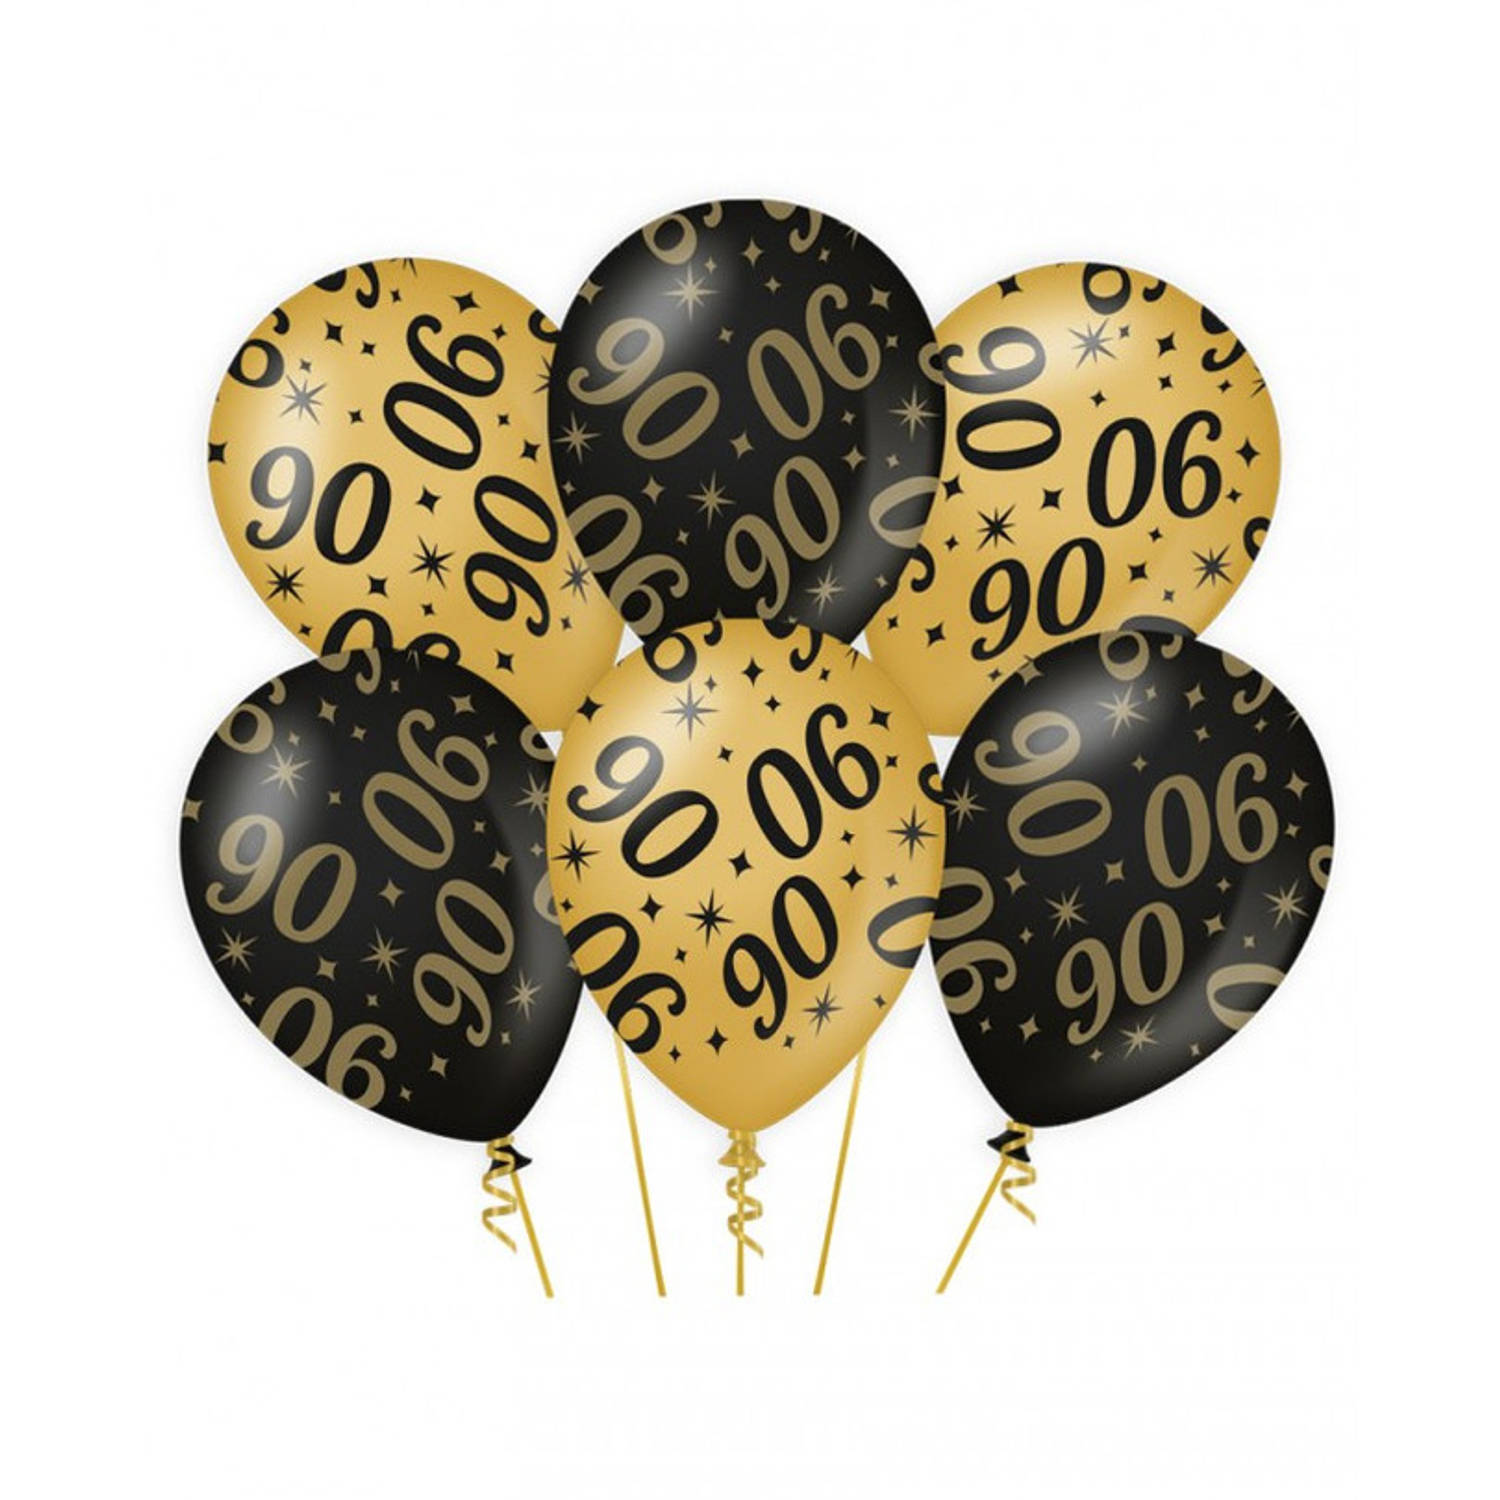 6x stuks leeftijd verjaardag feest ballonnen 90 jaar geworden zwart/goud 30 cm - Ballonnen